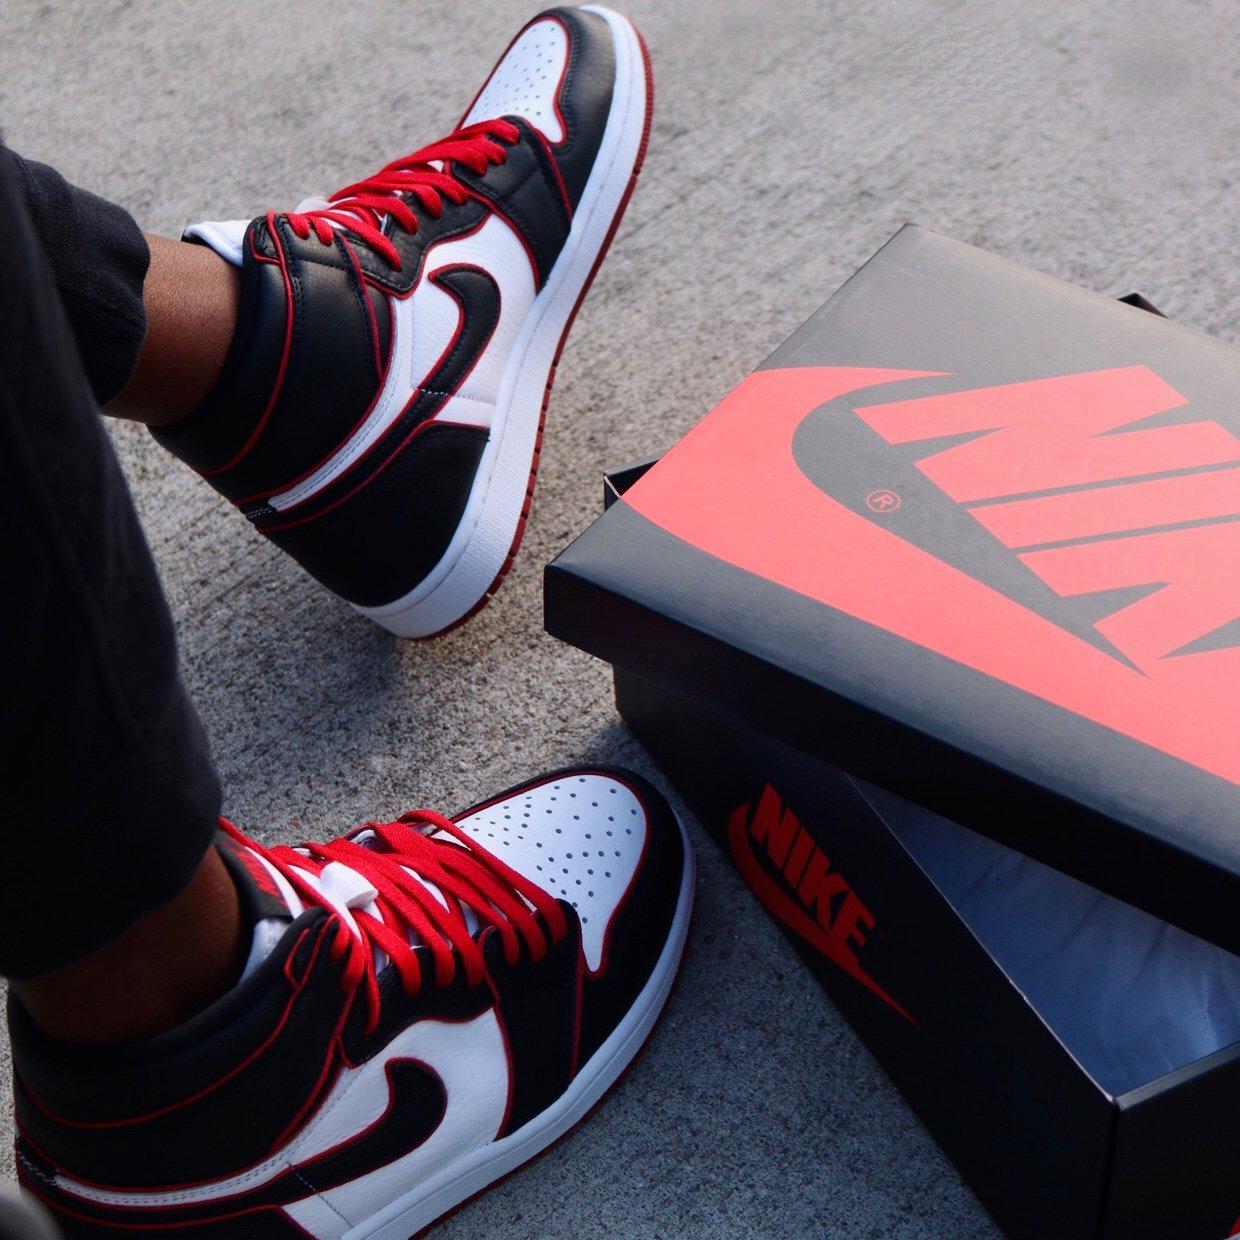 Sneakers Release – Jordan 1 Retro High OG “White/Black/Red”